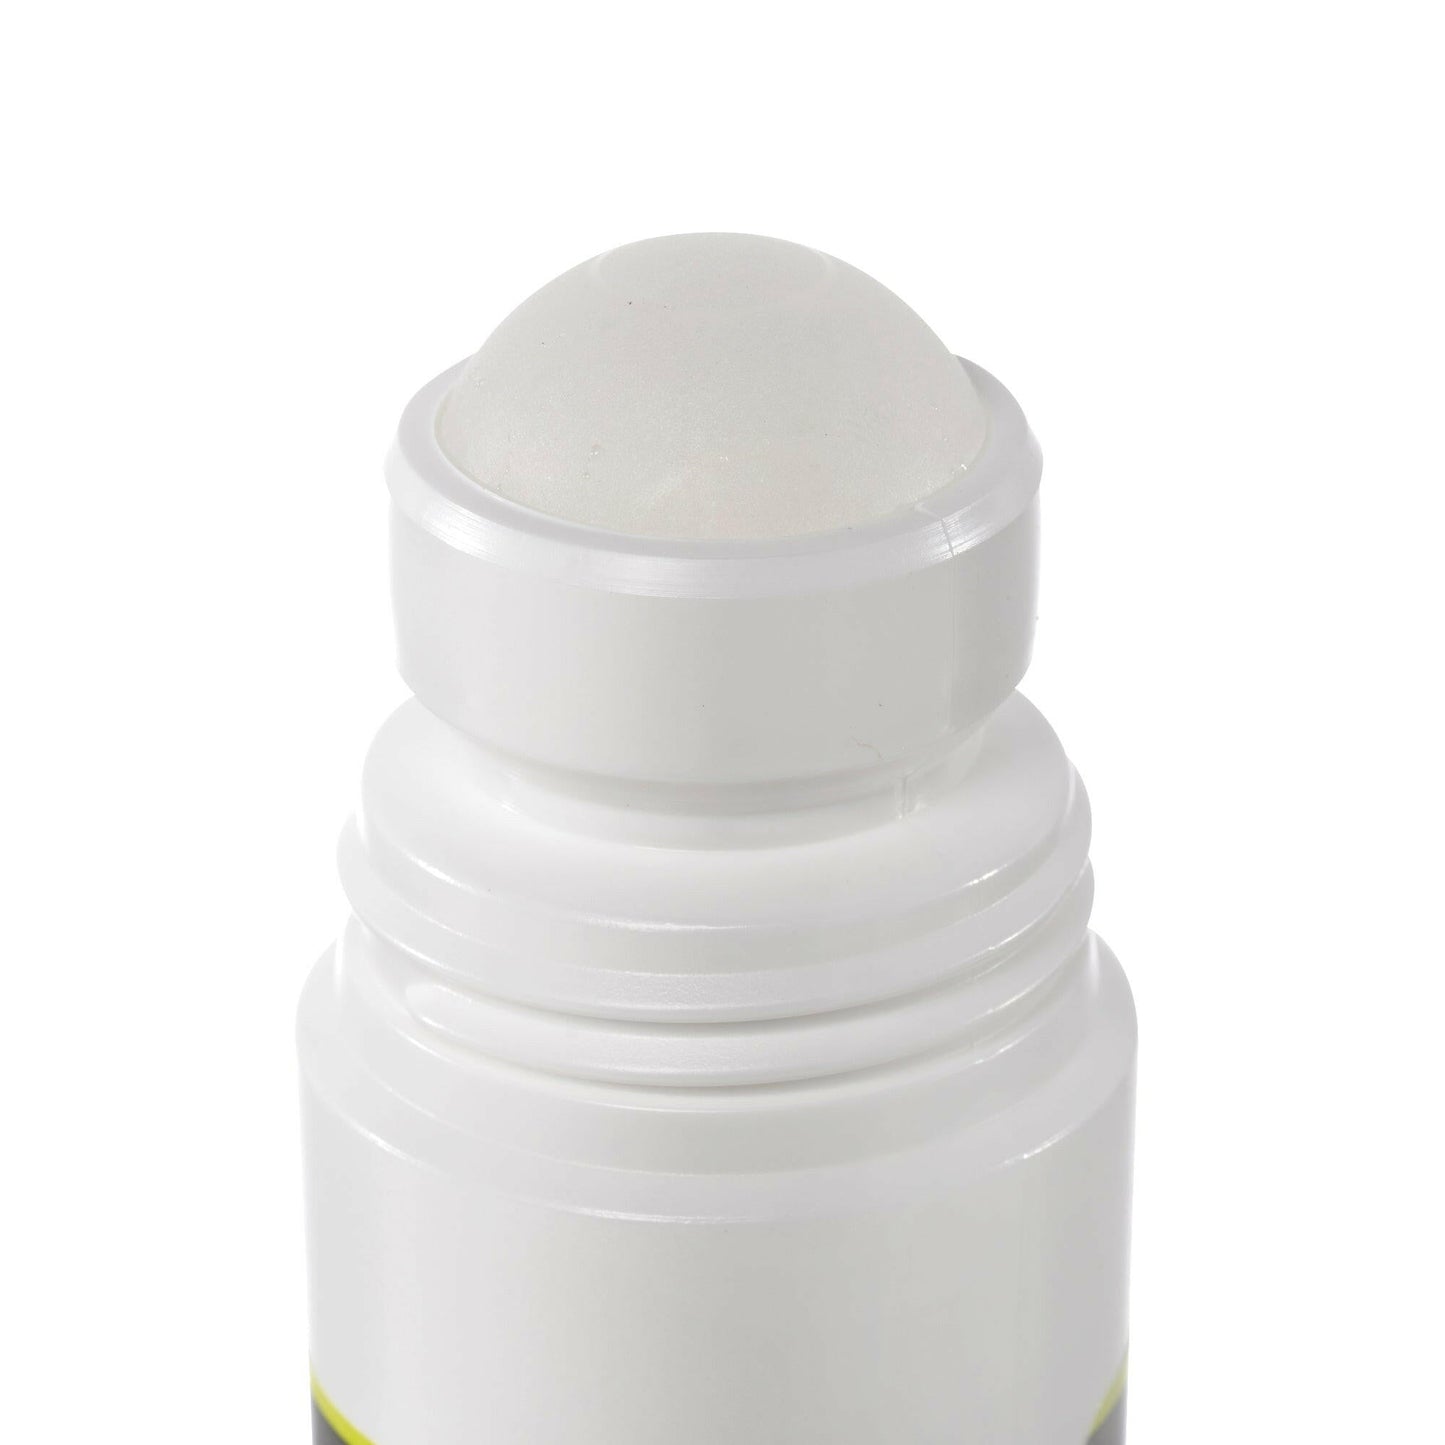 Premium 70% DMSO/Water Roll-On Solution - 3 oz BPA-Free Bottle, Low Odor, Pharmaceutical Grade (1 Bottle) - dmsostore